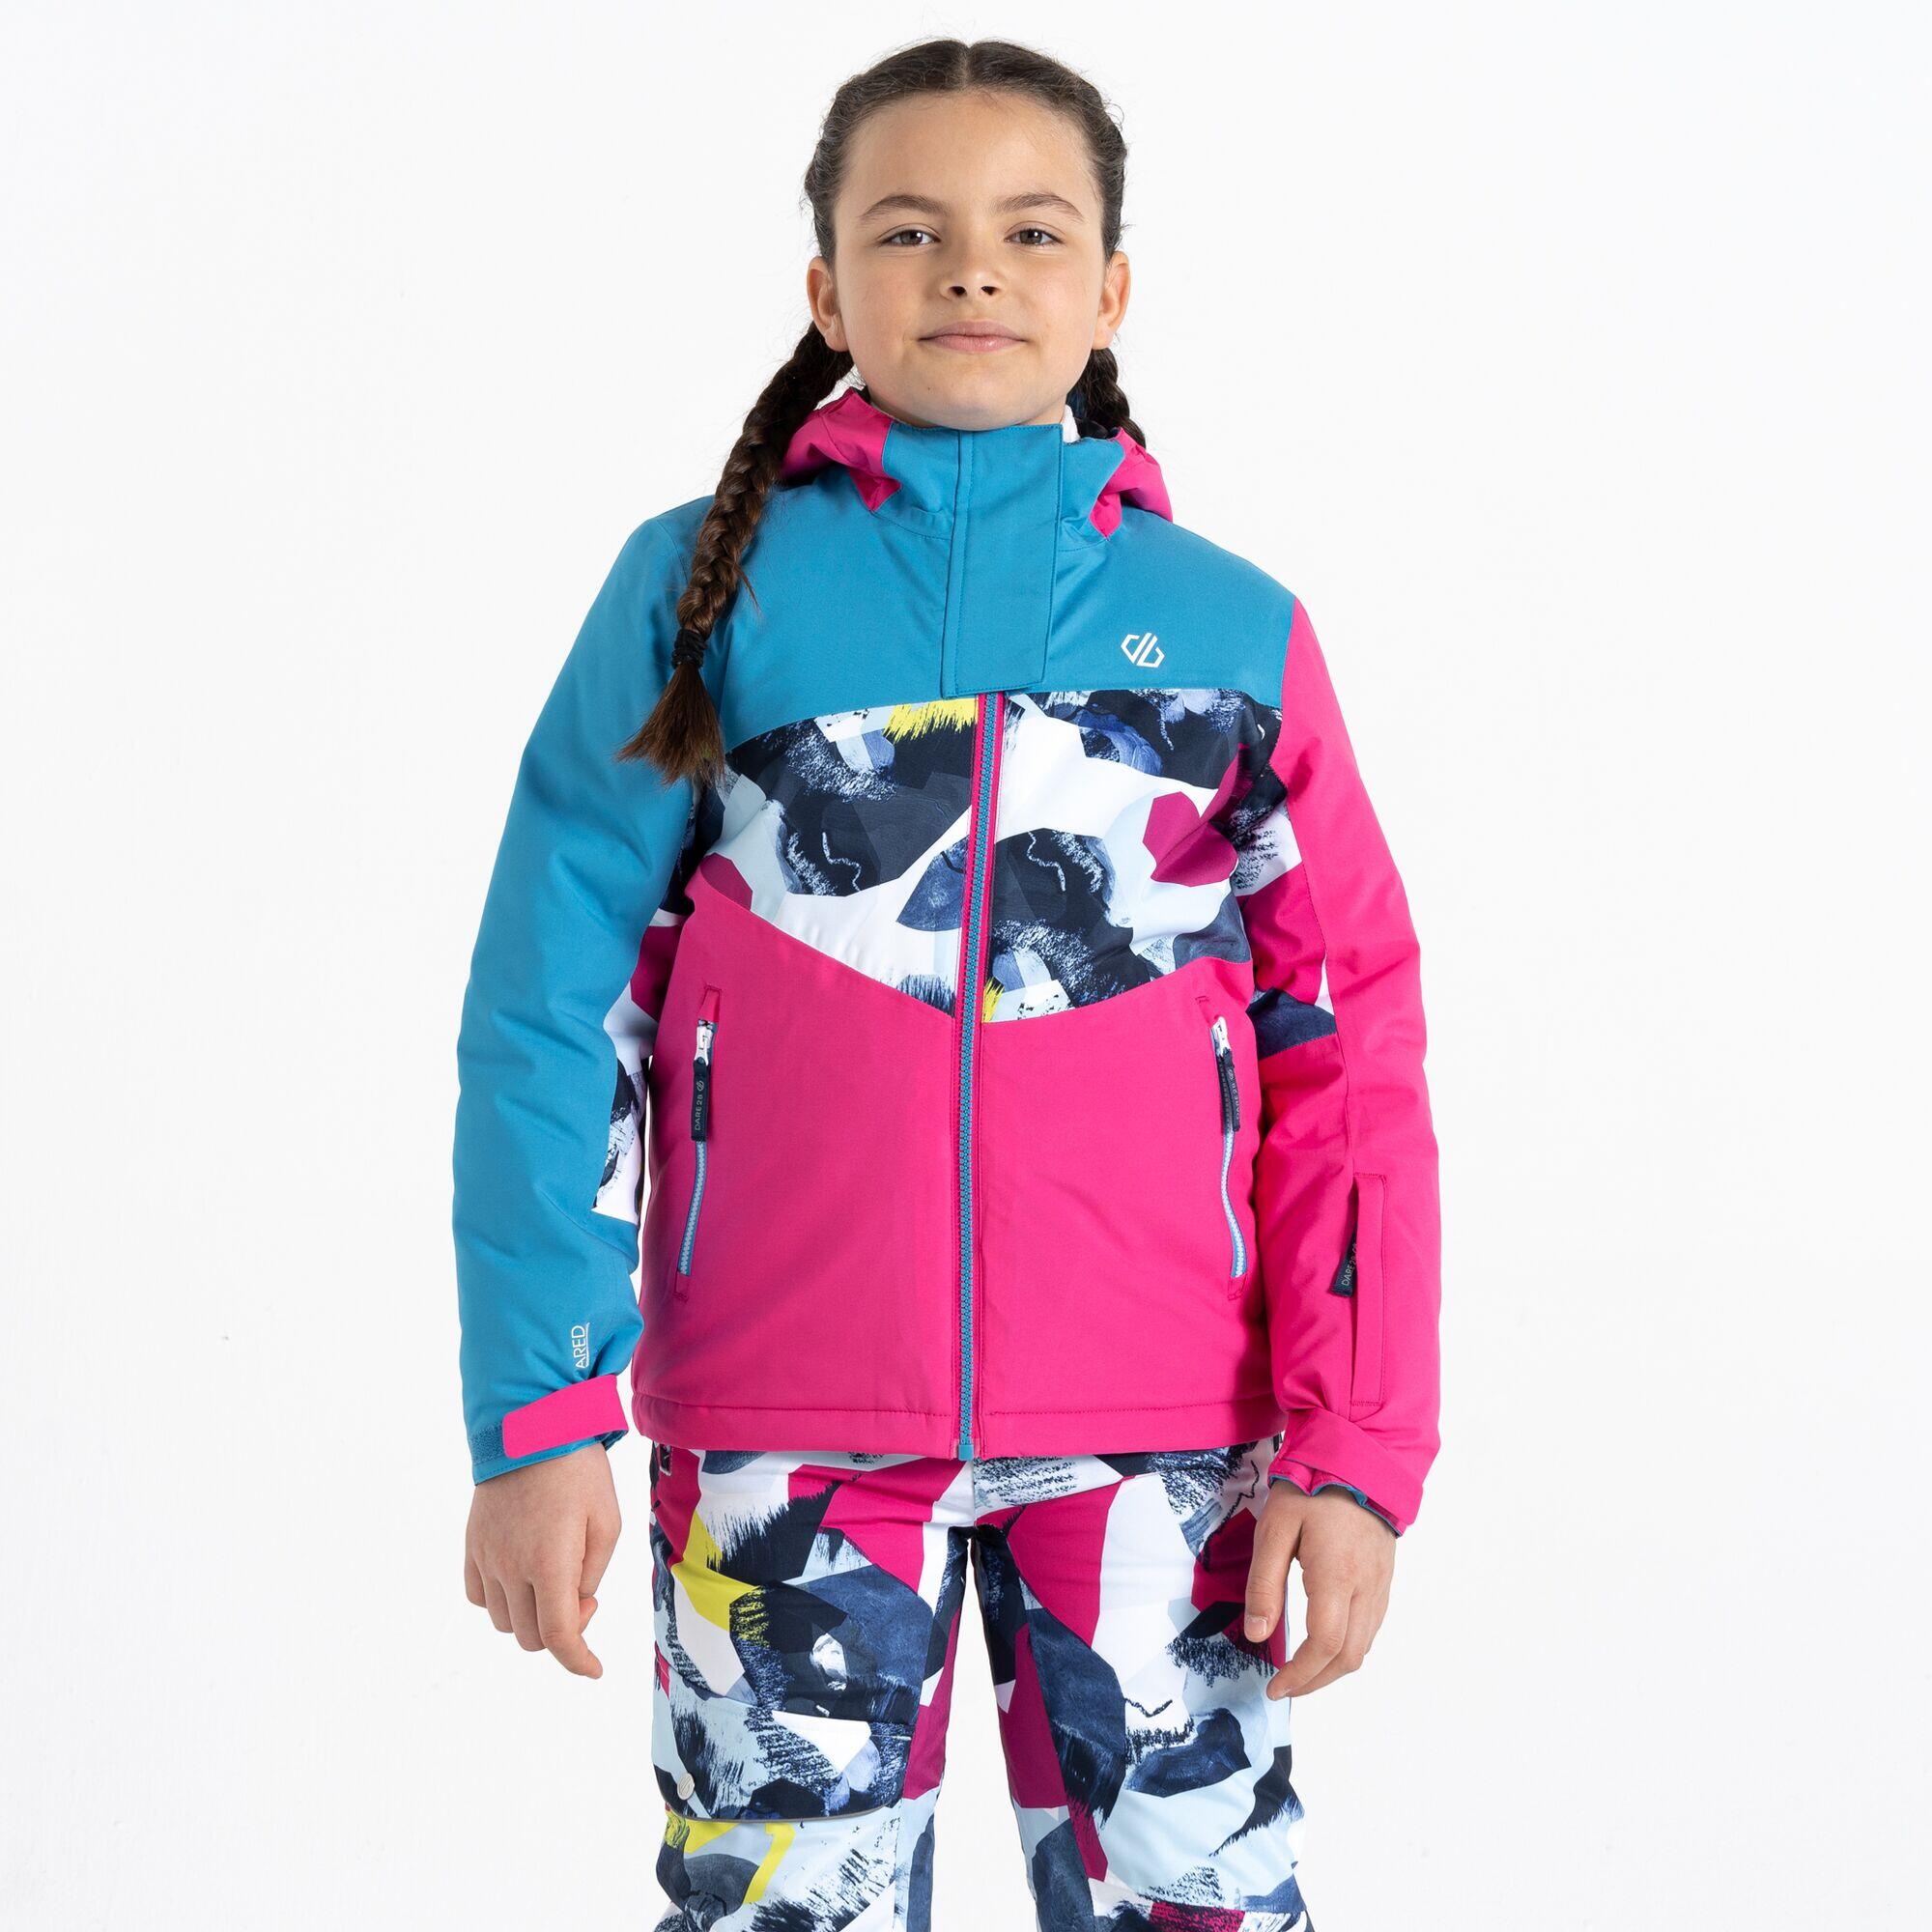 Humour II Kids' Ski Jacket 4/5